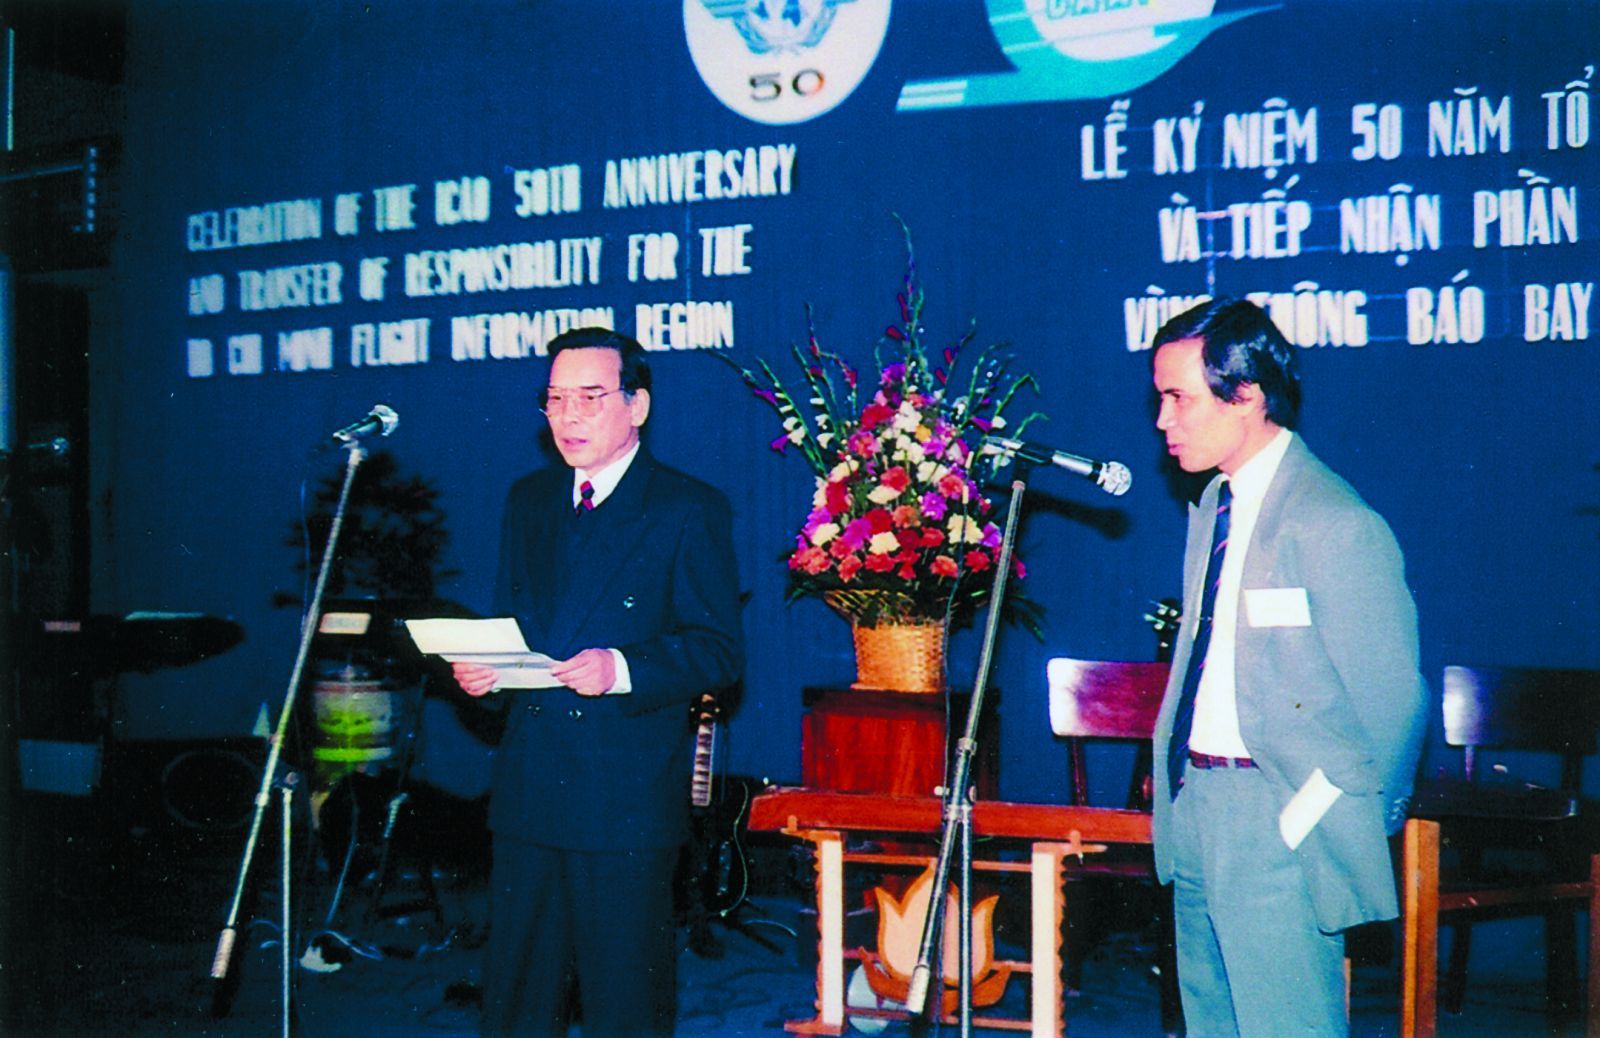 Hai mươi bảy năm sau ngày tiếp nhận quyền điều hành phần phía Nam FIR Hồ Chí Minh